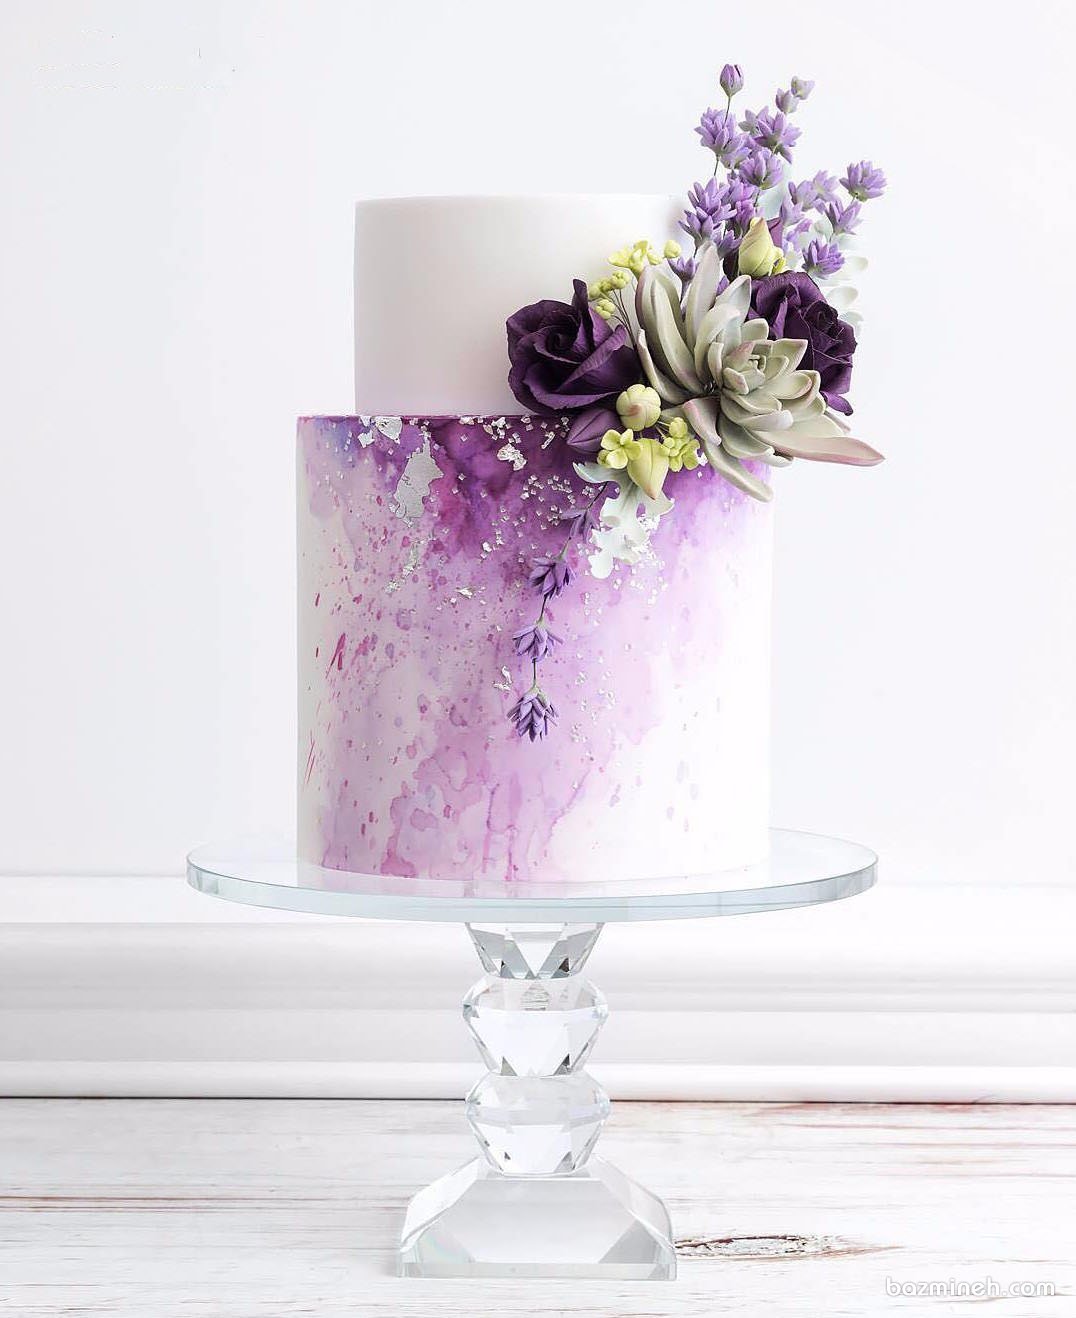 کیک زیبای جشن تولد یا سالگرد ازدواج تزیین شده با گل های طبیعی با تم سفید بنفش